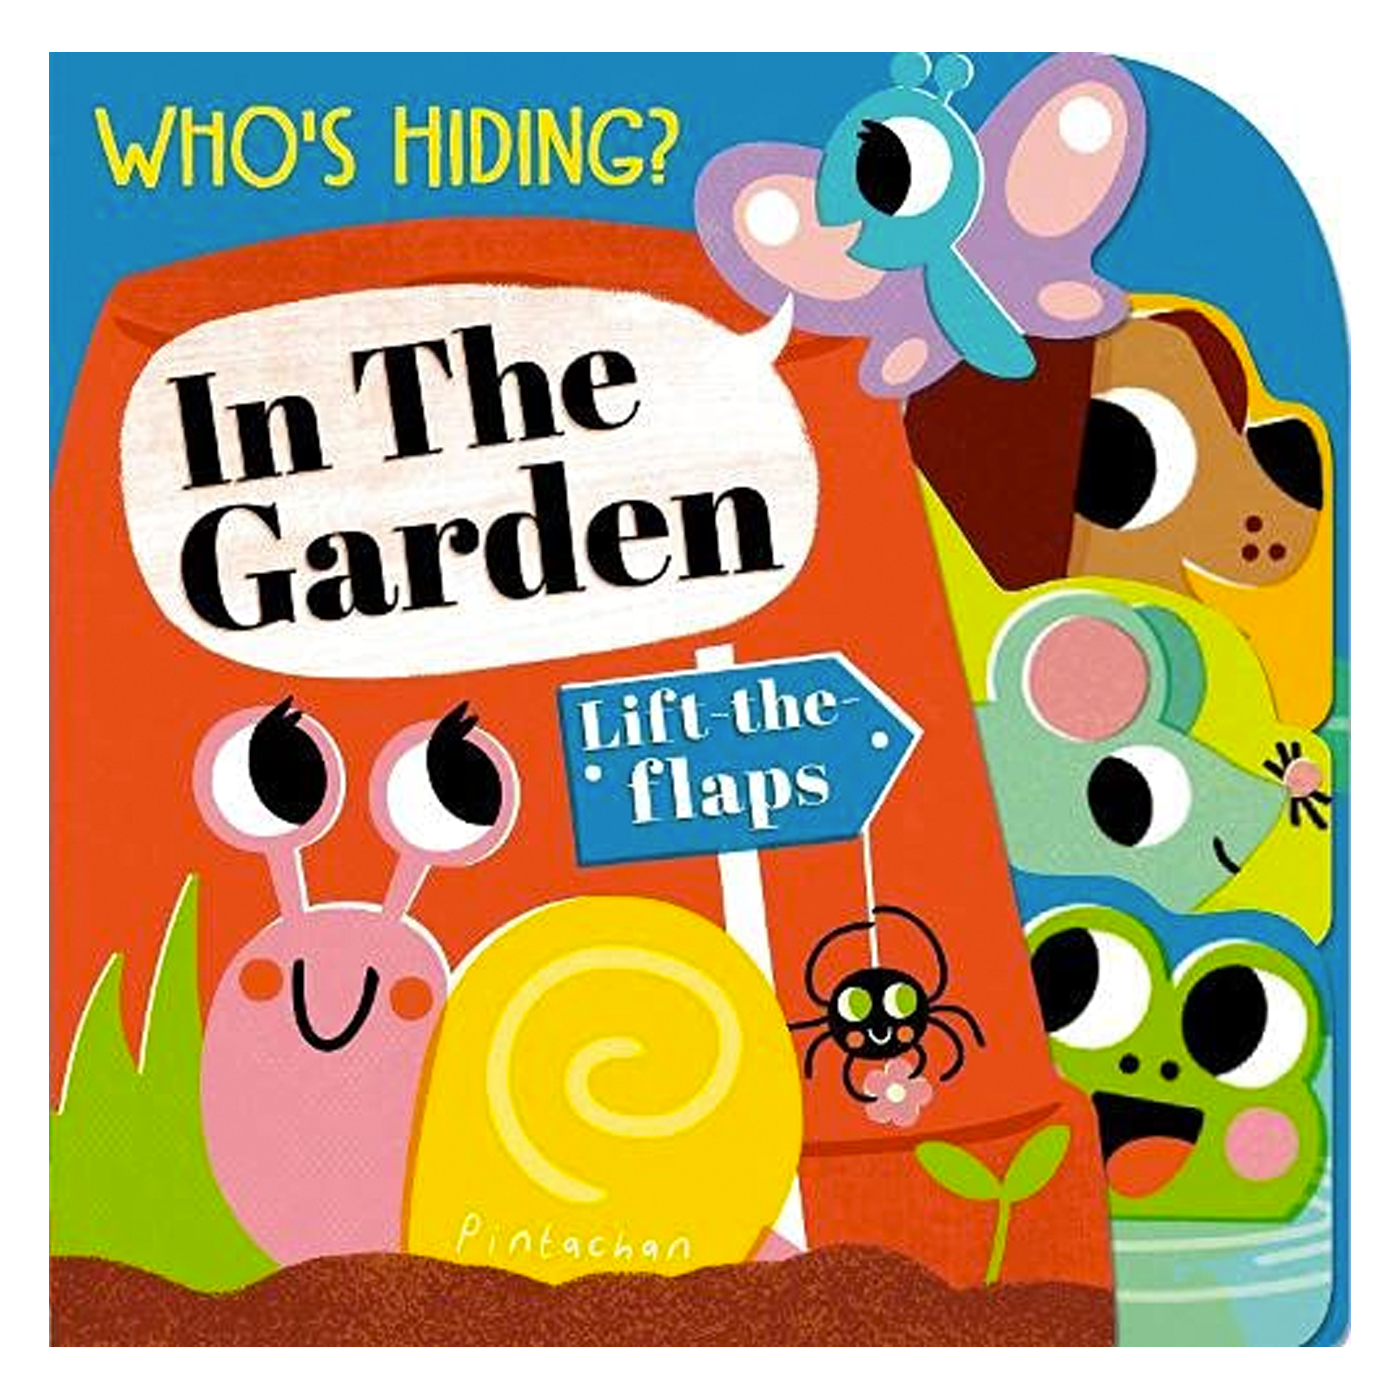  Who's Hiding? In the Garden